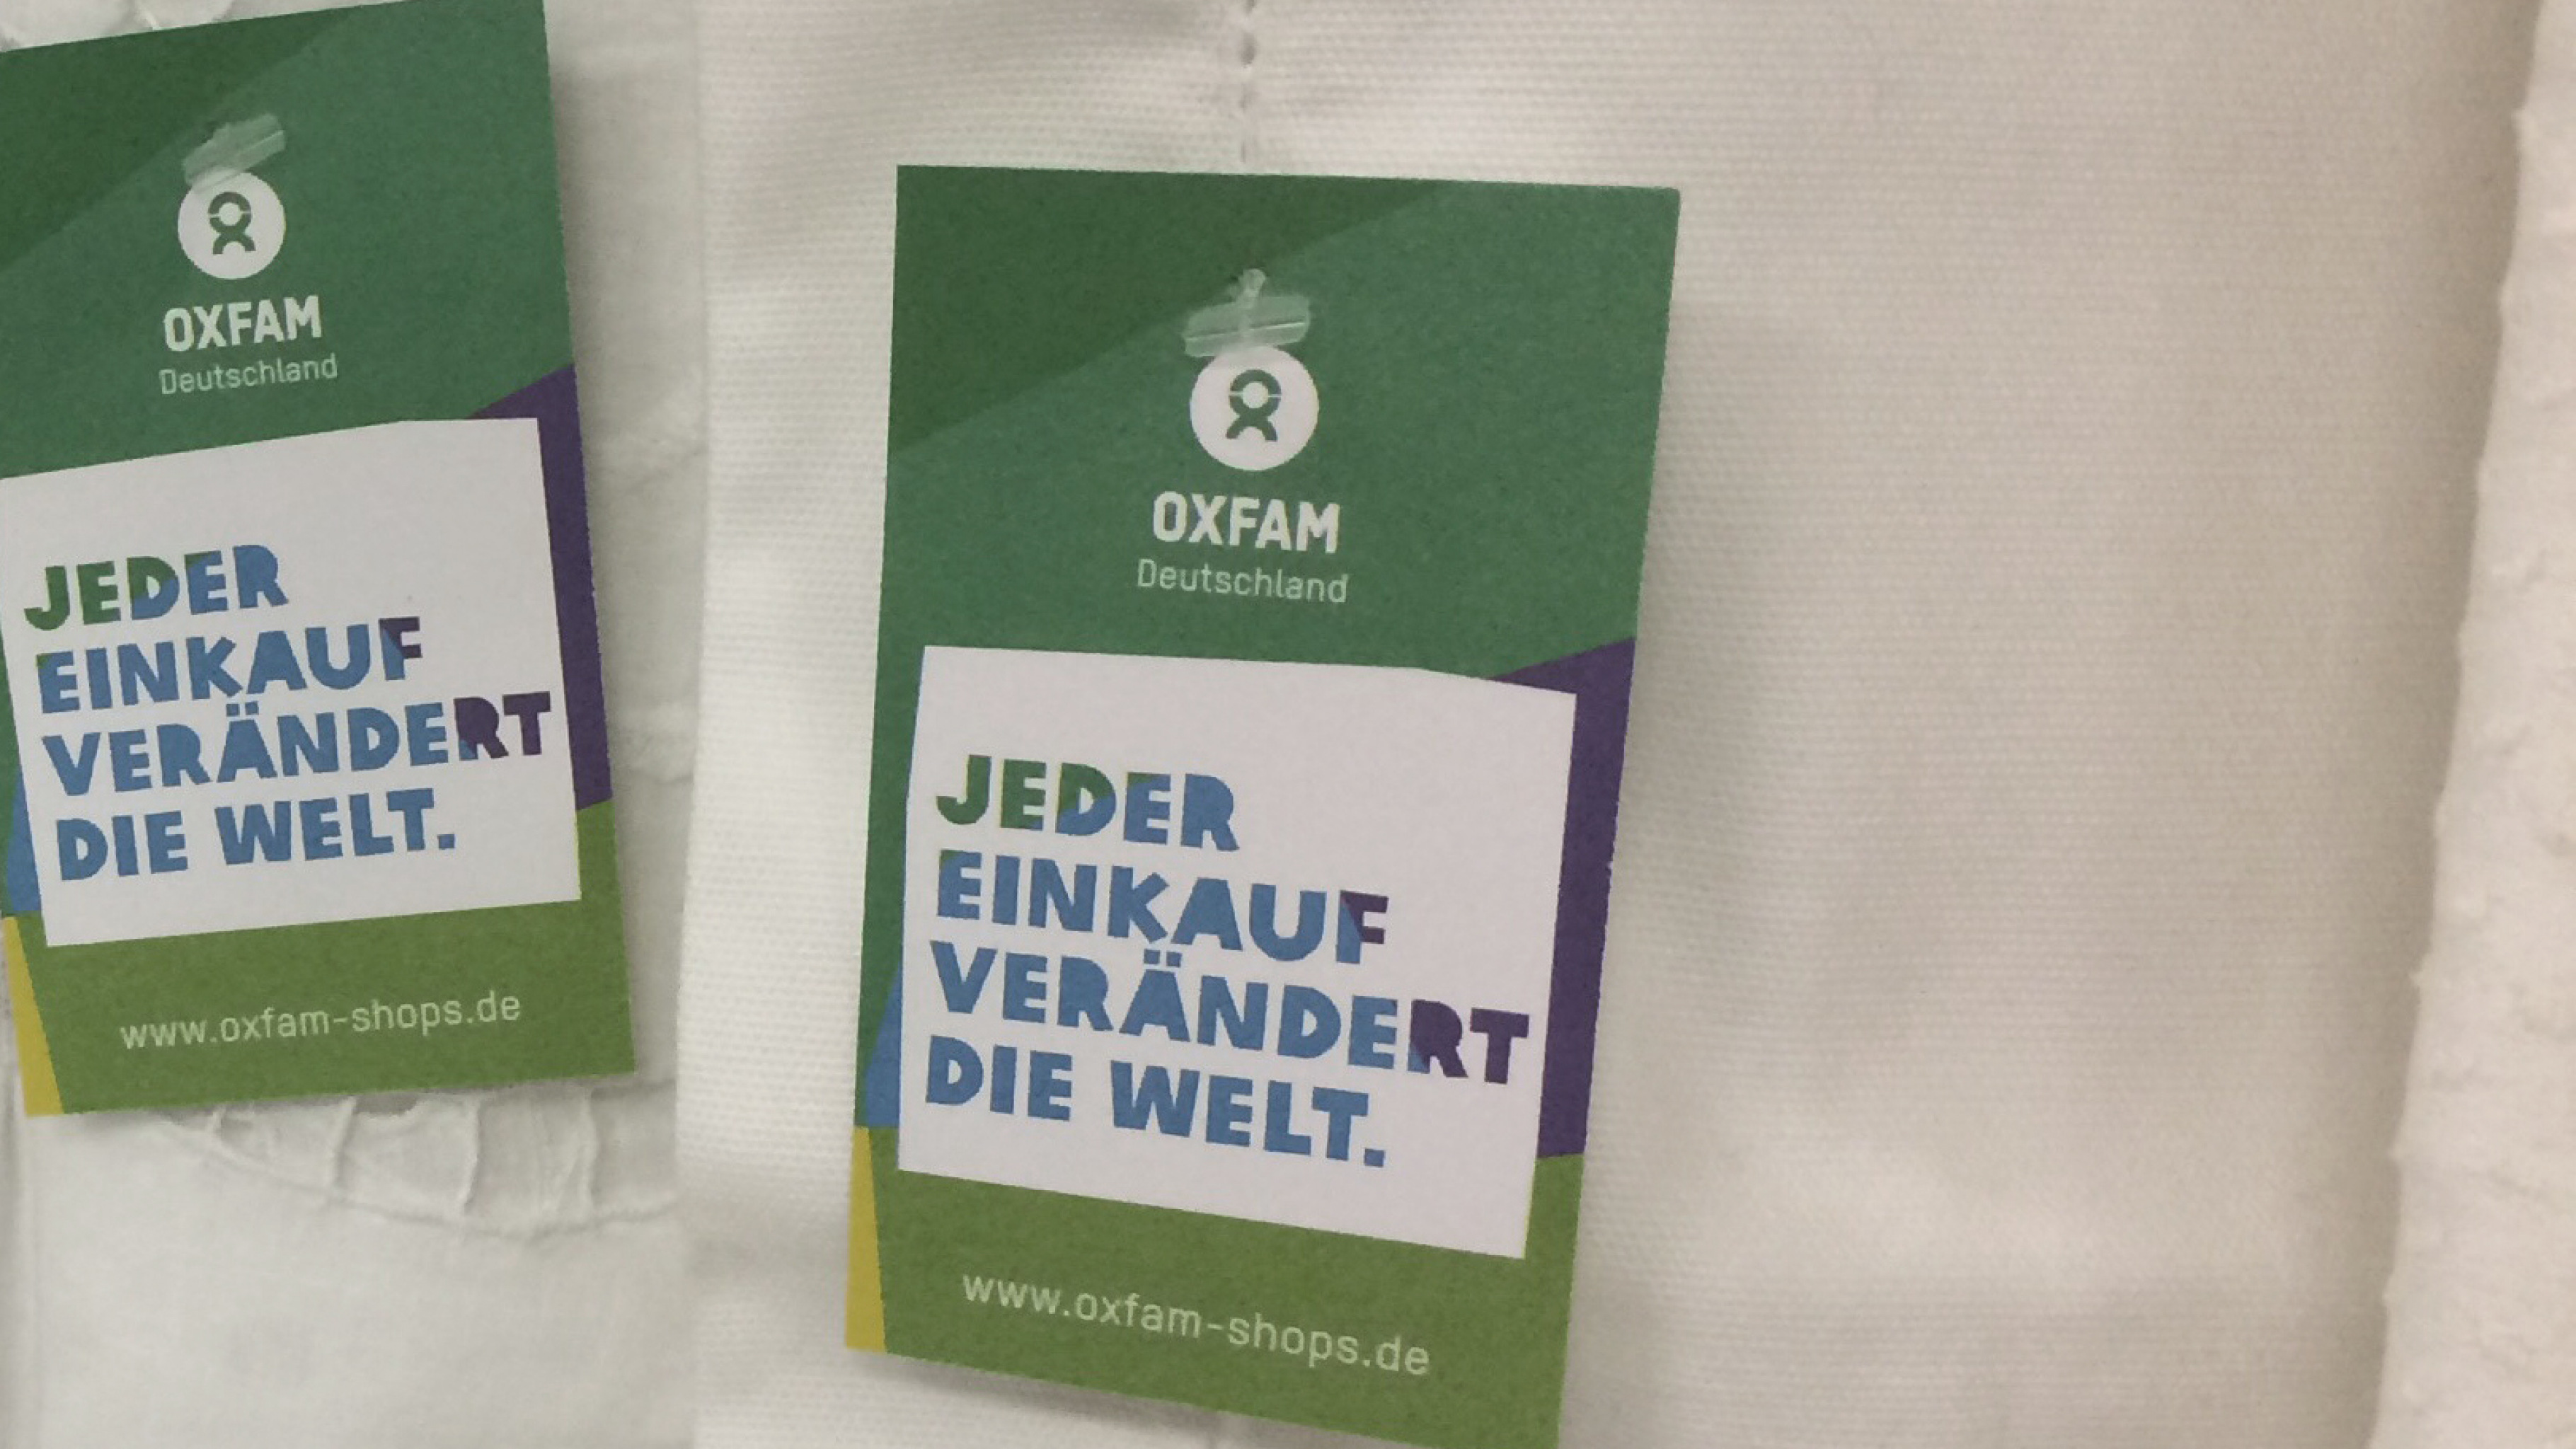 Heimtextilien gibt es im Oxfam Shop